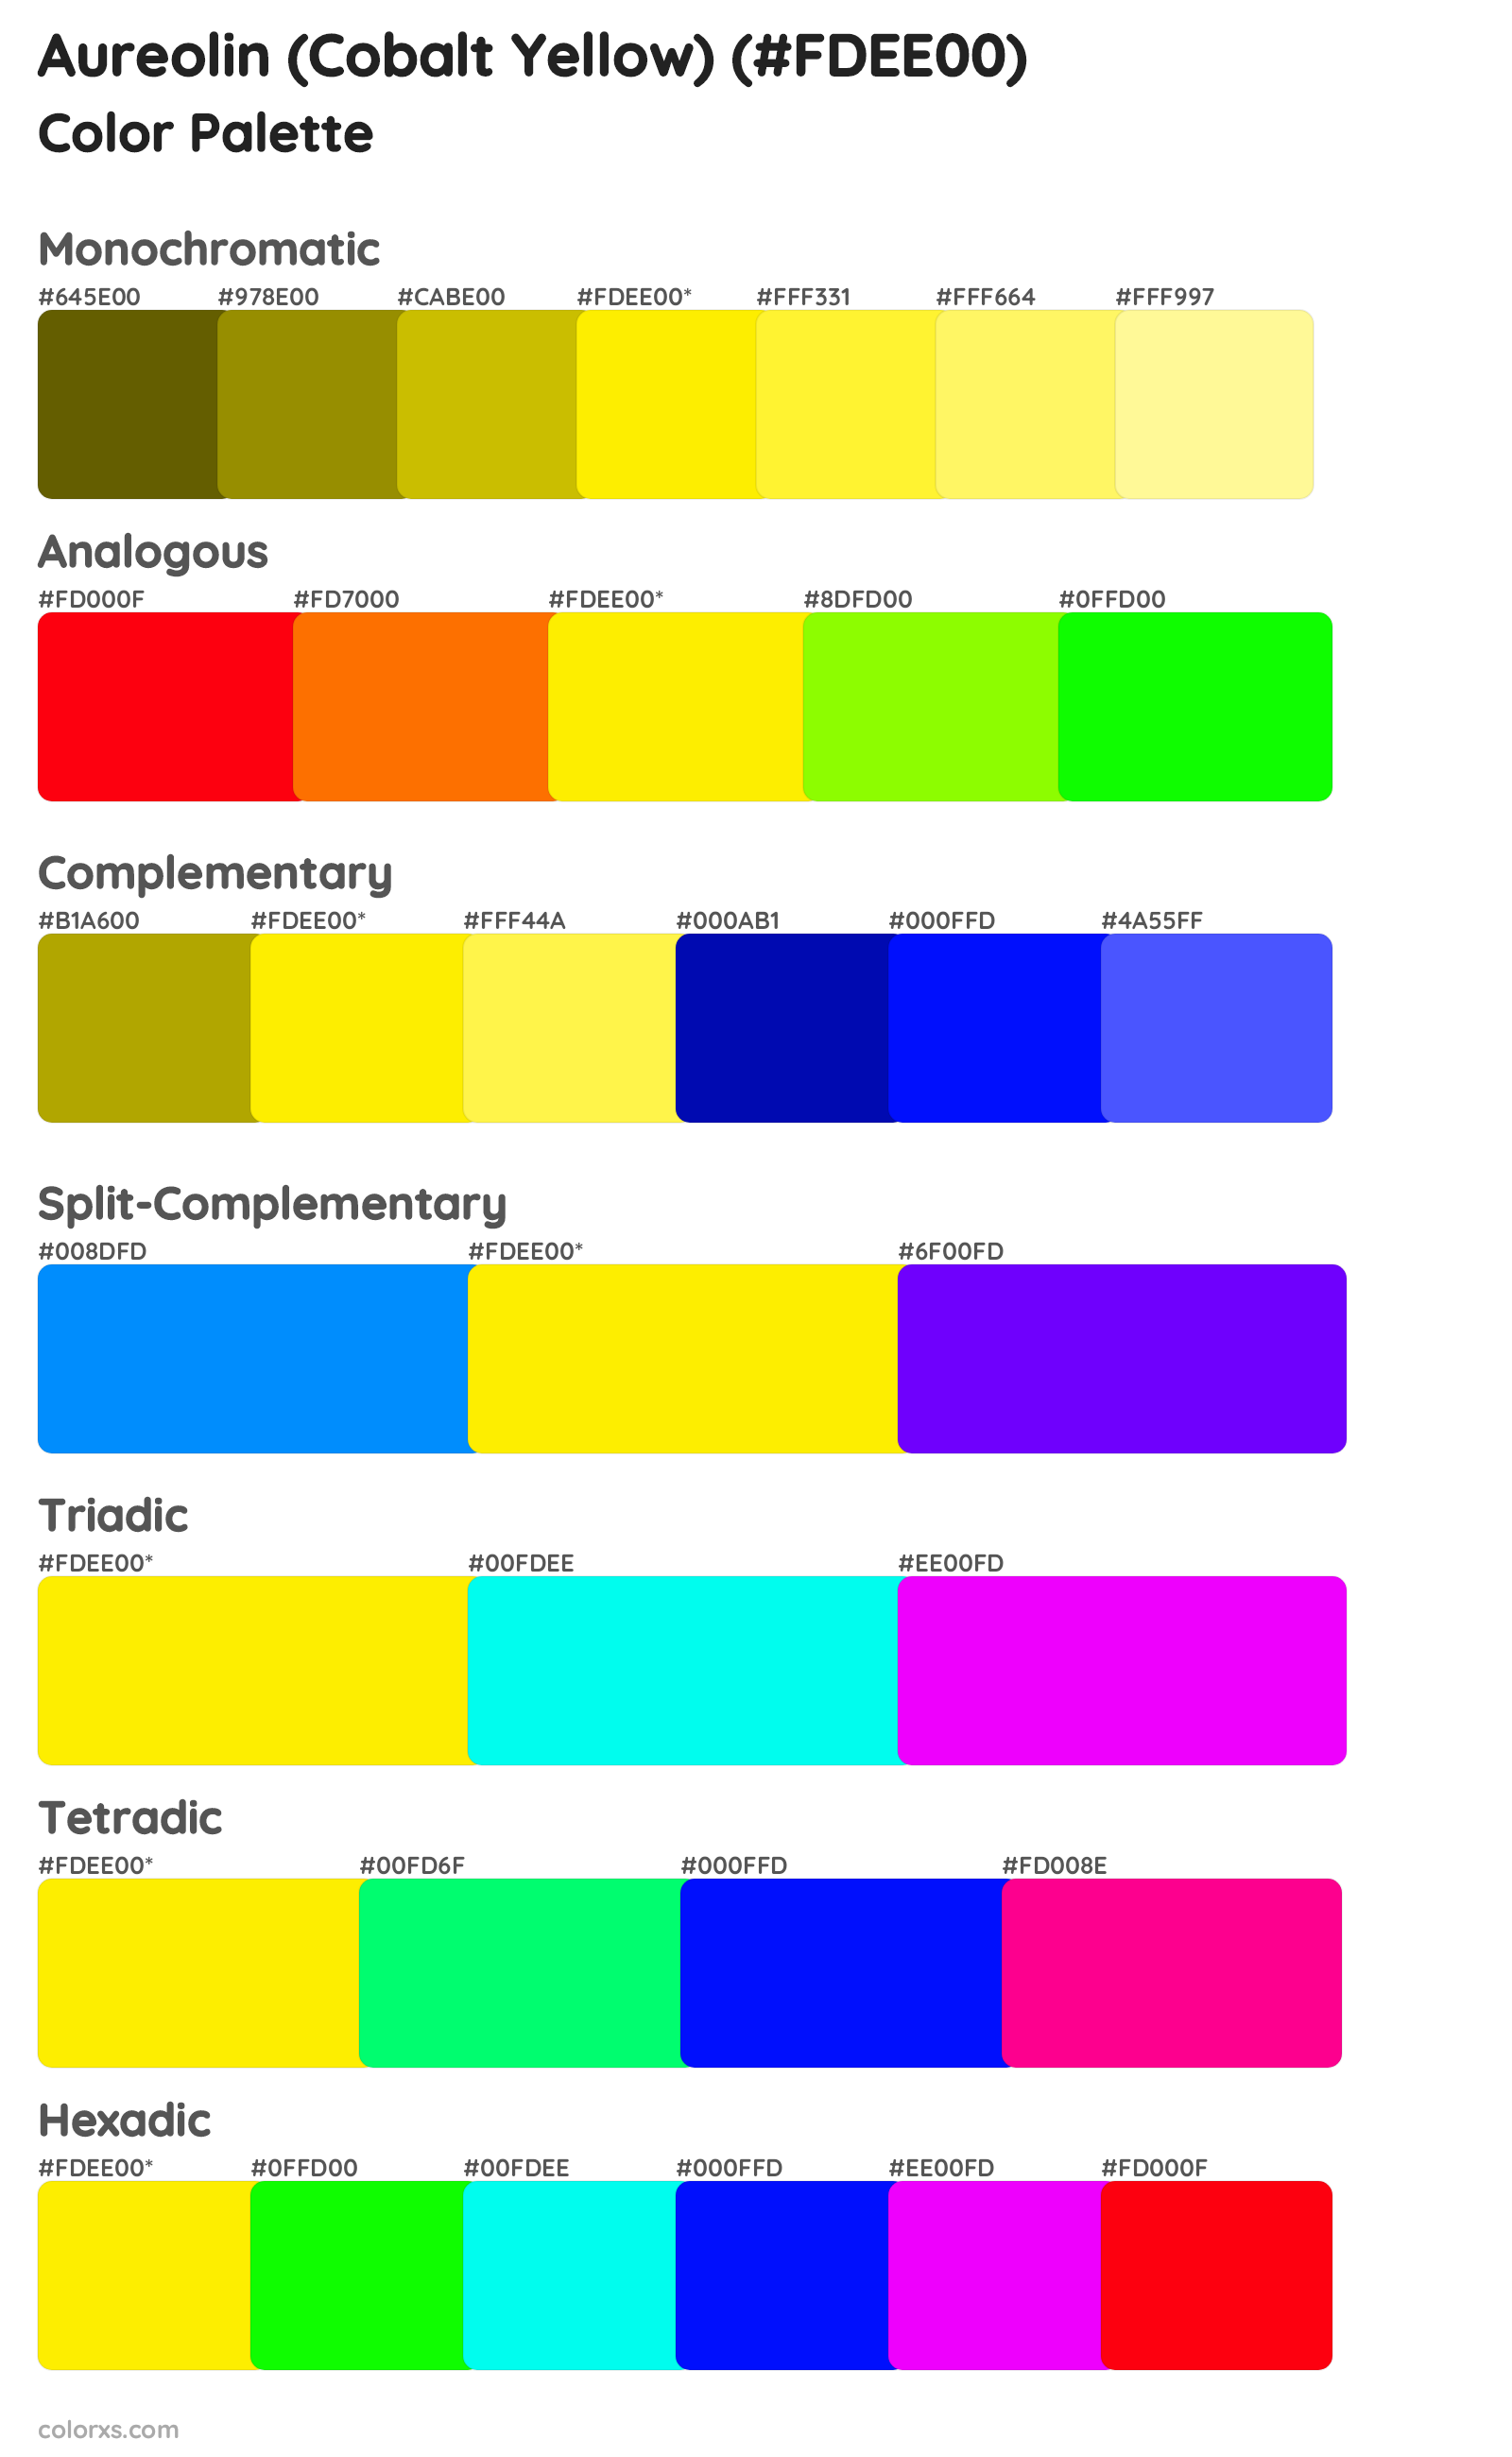 Aureolin (Cobalt Yellow) Color Scheme Palettes